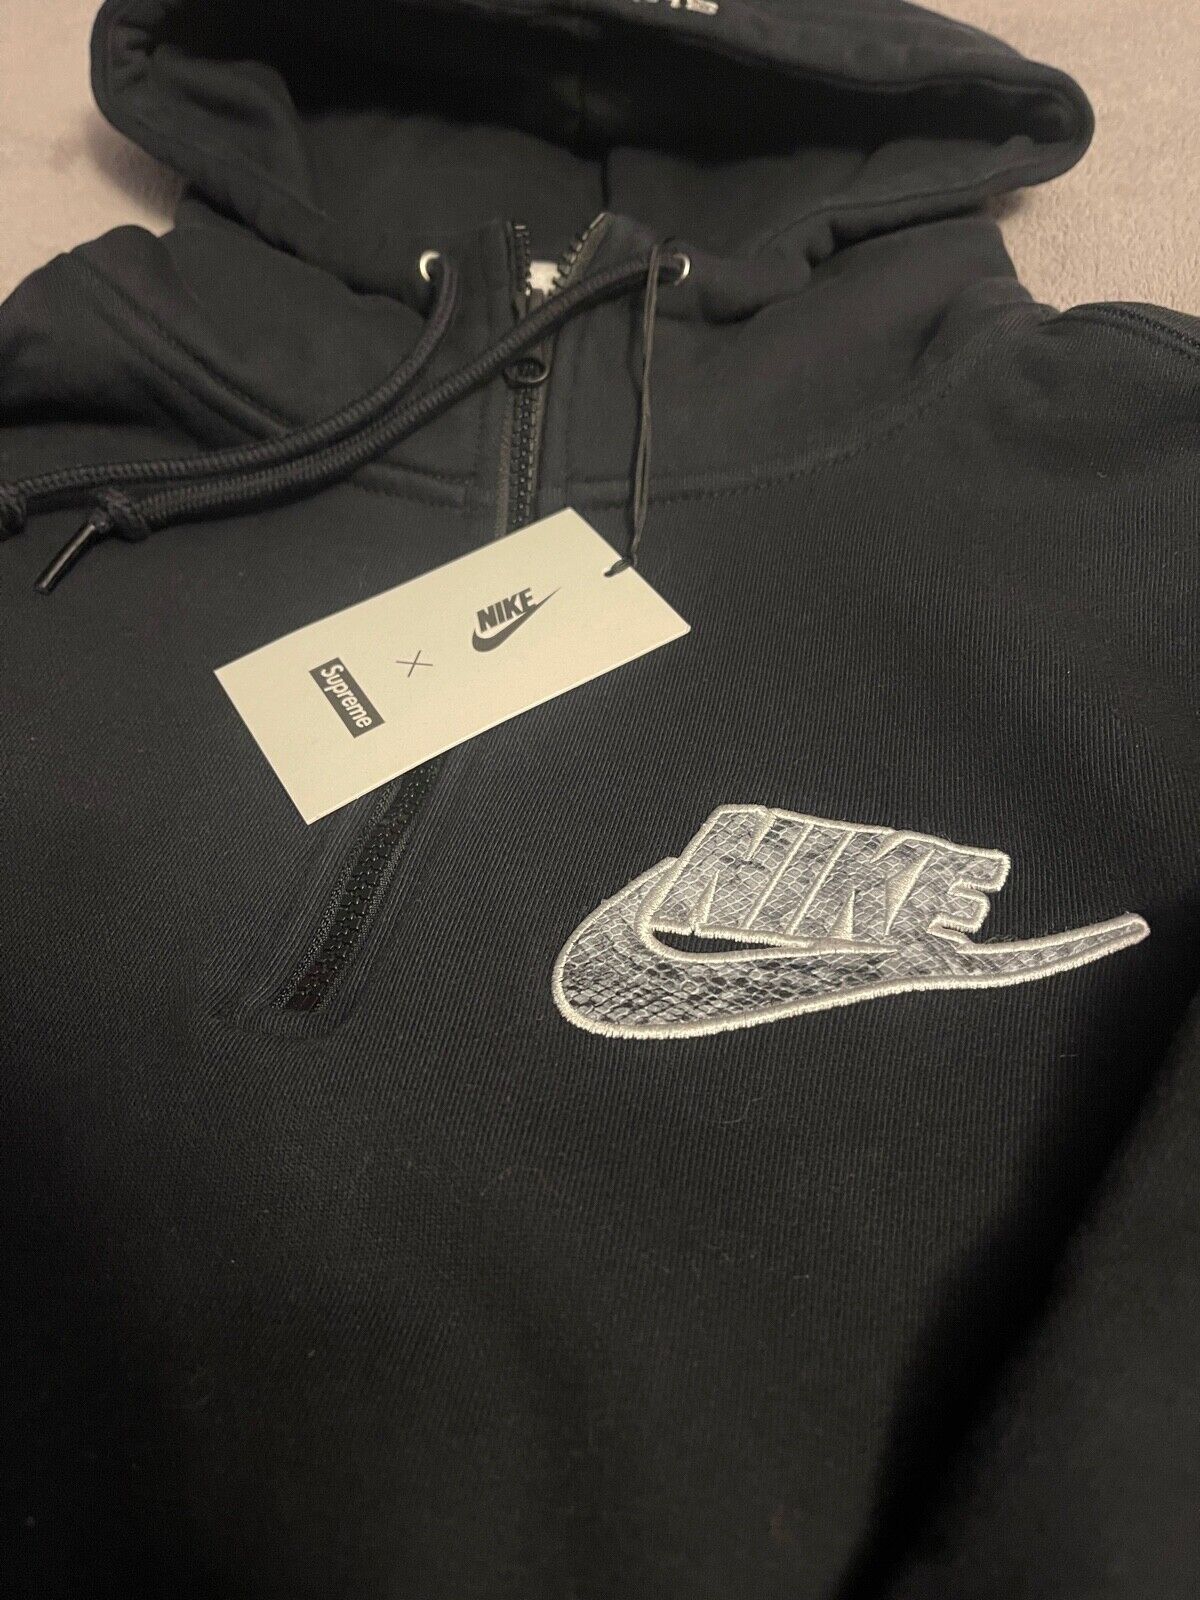 NWT Supreme Nike Half Zip Hooded Sweatshirt Black M Medium Hoodie